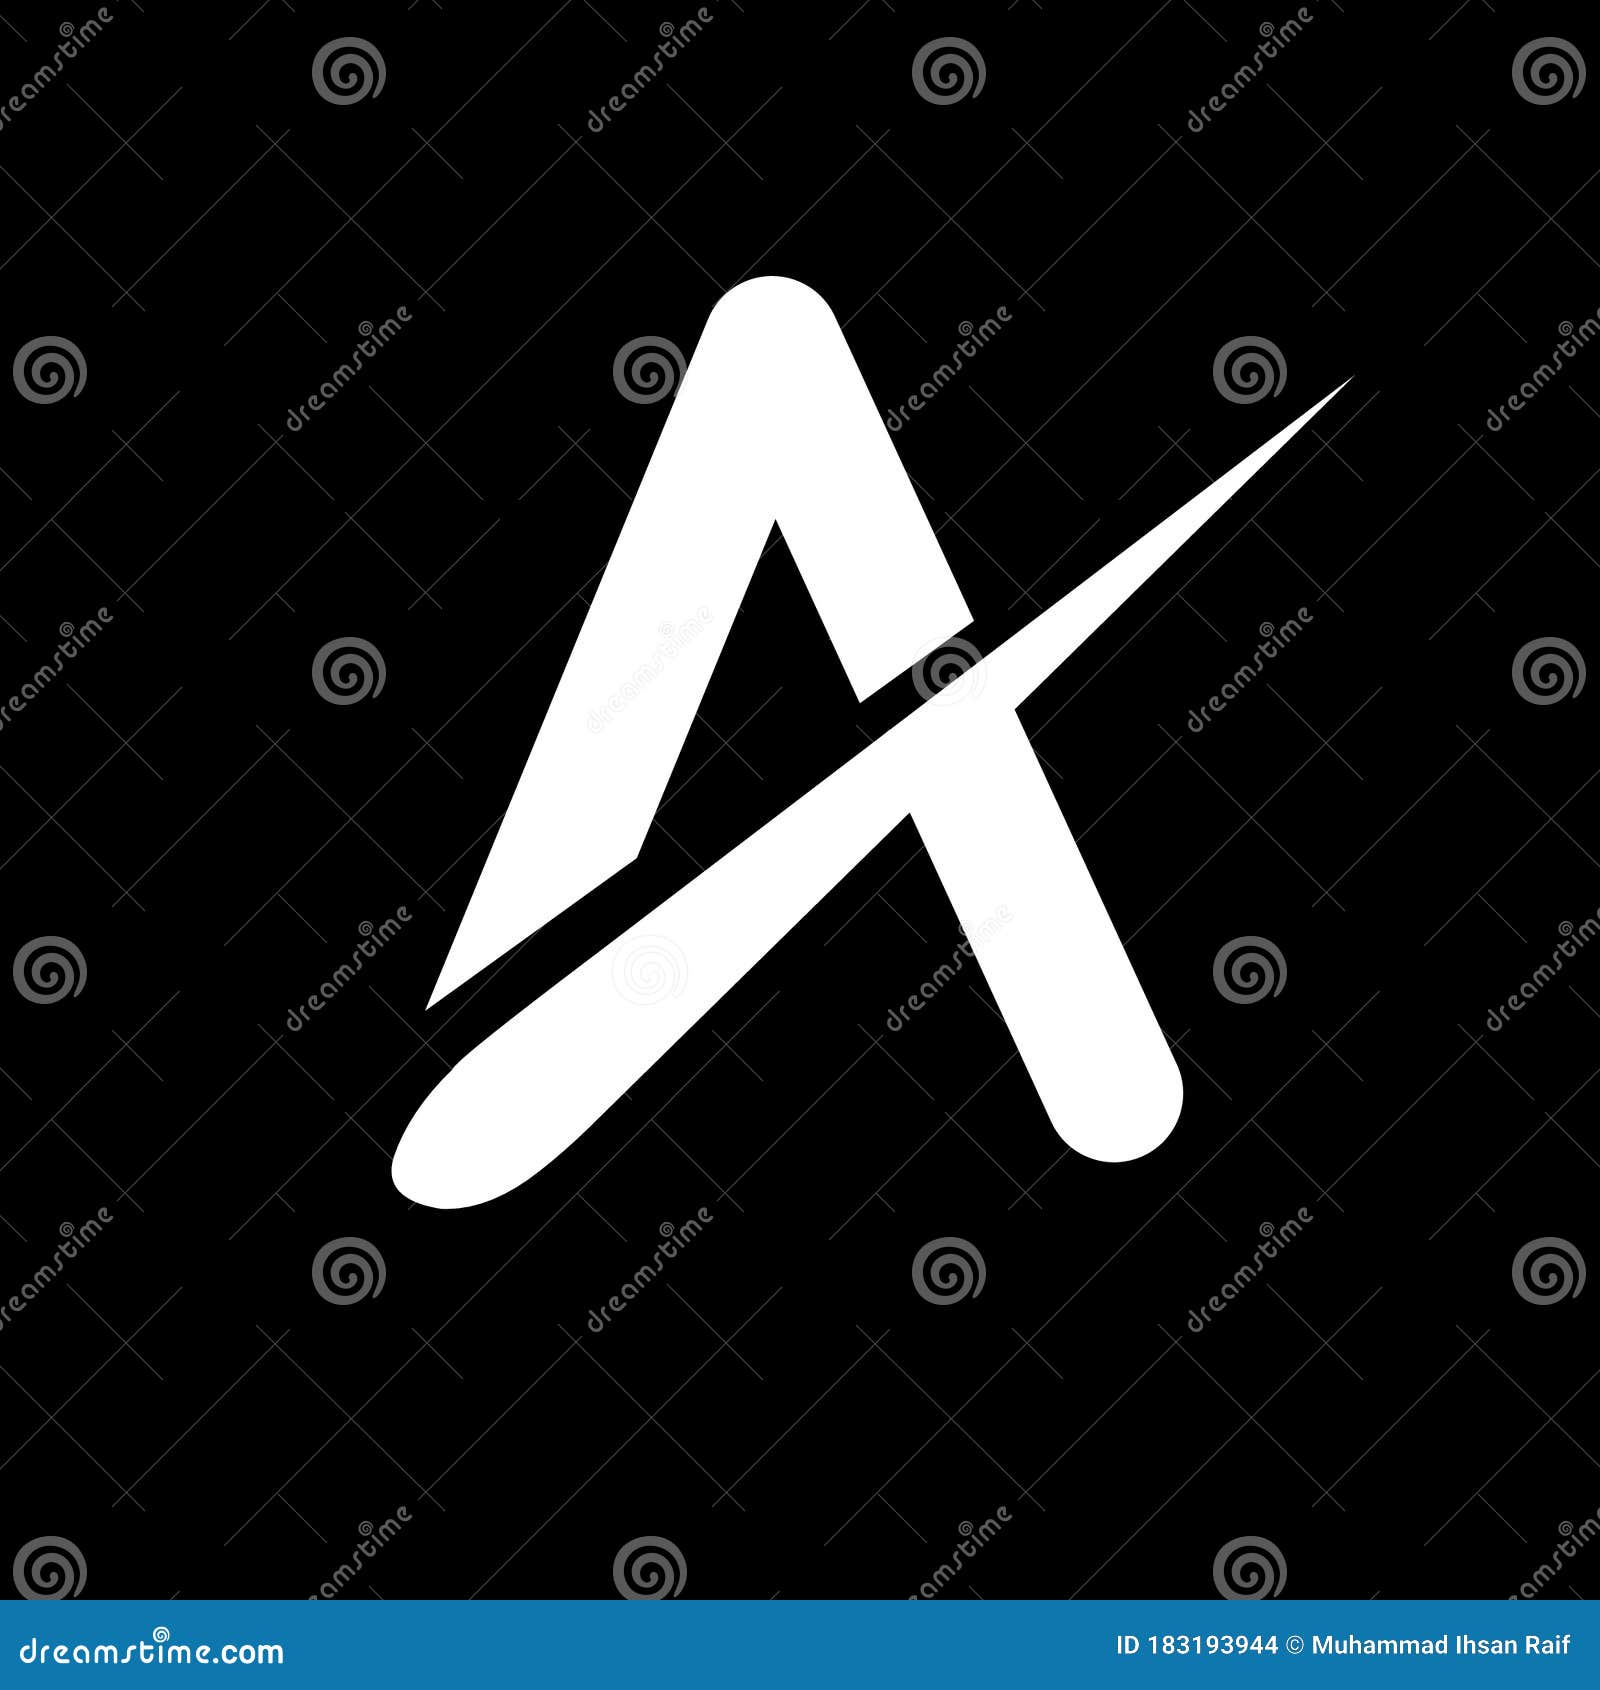 Modern logo design | Complete beginner's guide | Adobe